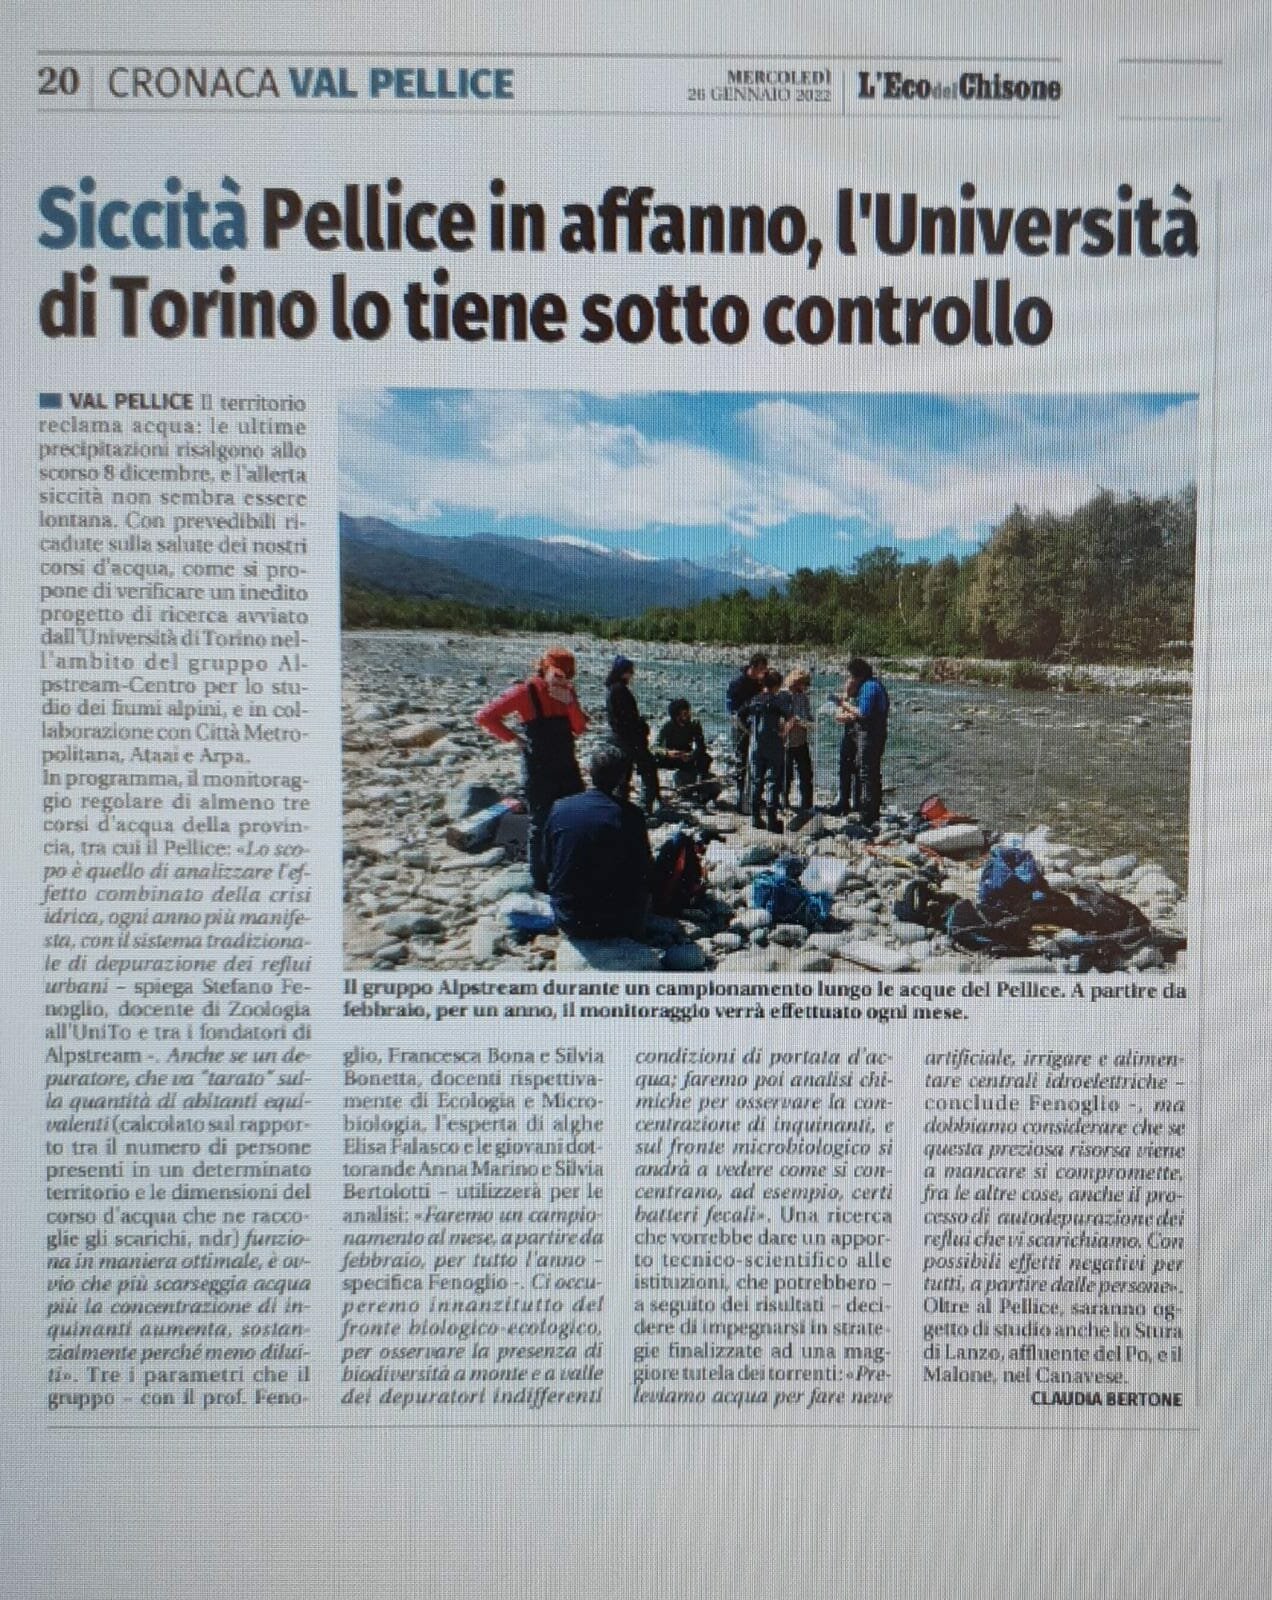 foto dell'articolo pubblicato su l'Eco del Chisone il 26 gennaio 2022 e intitolato <q>Siccità Pellice in affanno, l'Università di Torino lo tiene sotto controllo</q>> </p>

<p> </figure> </p>

	<ul>
	<li class=